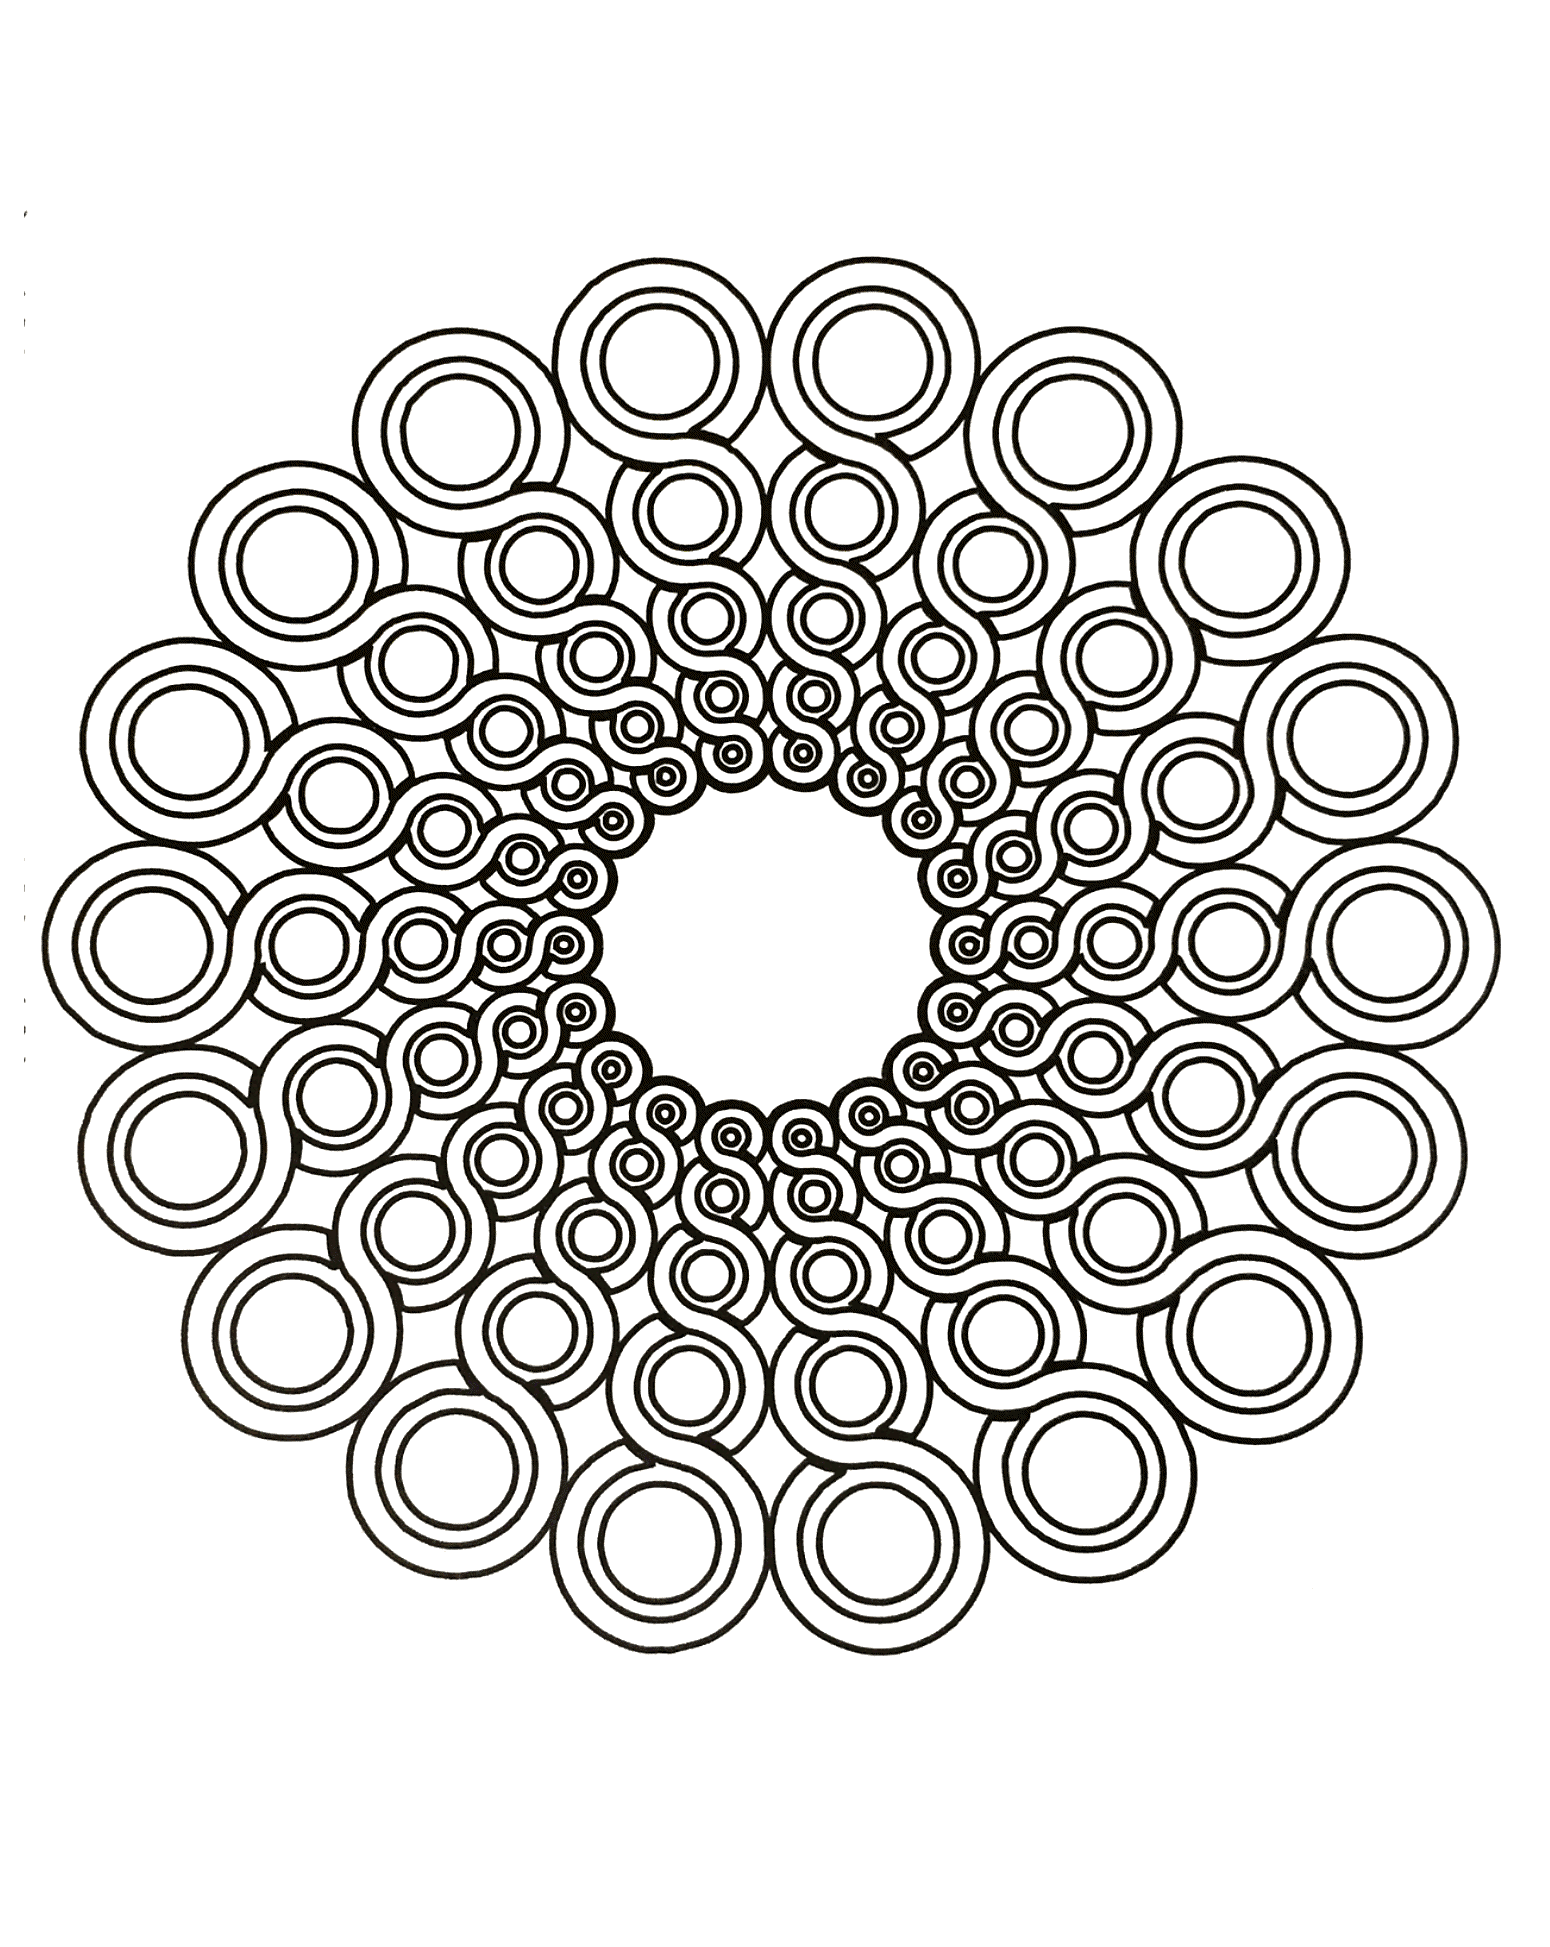 Superbe mandala avec une succession de cercle formant une très jolie fleur en vue d'ensemble. Le niveau de ce dernier est normal.